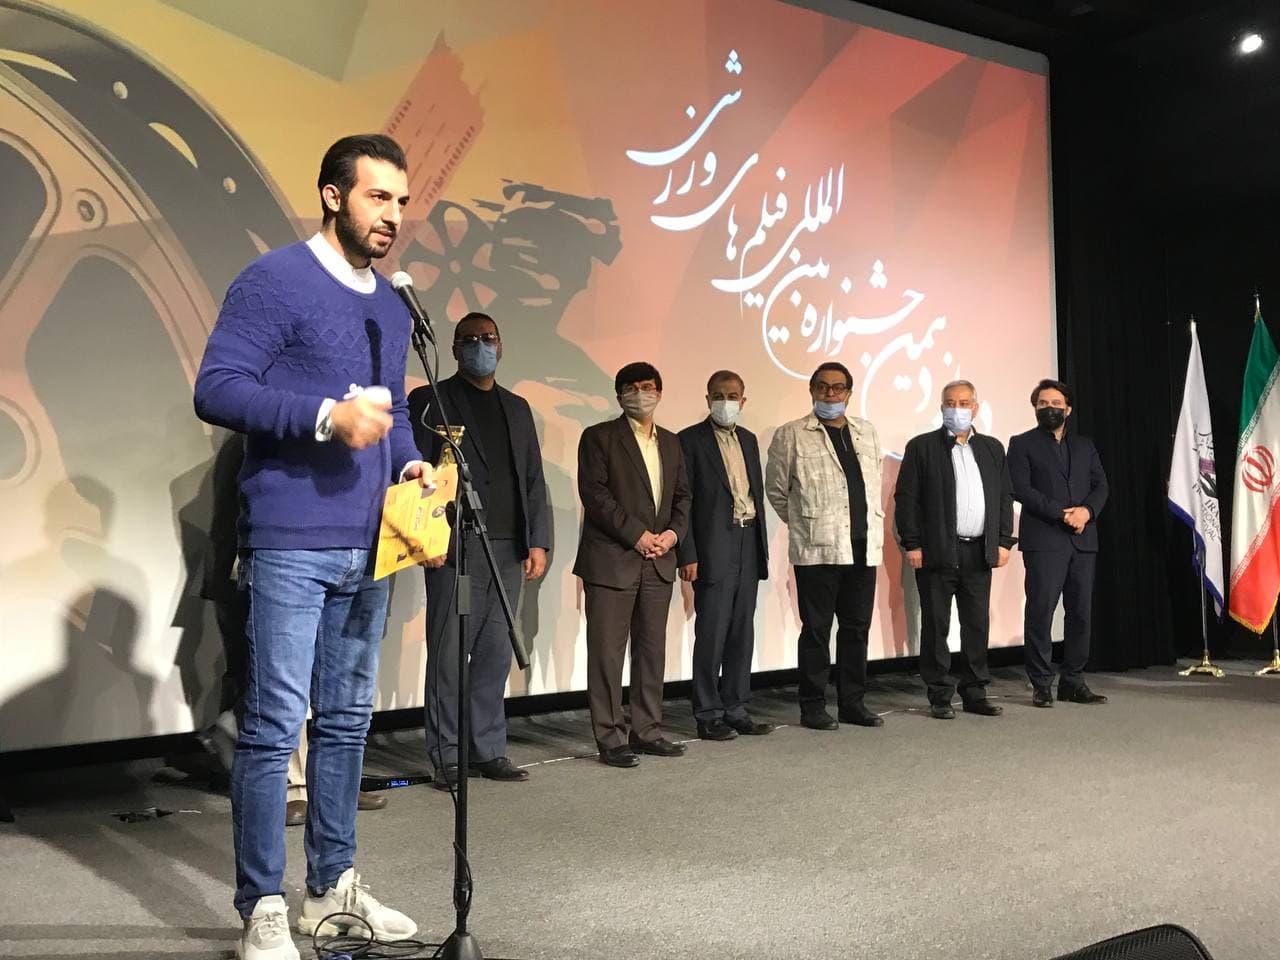  احمدی و روا برنده عنوان گزارشگر و مجری برتر شدند